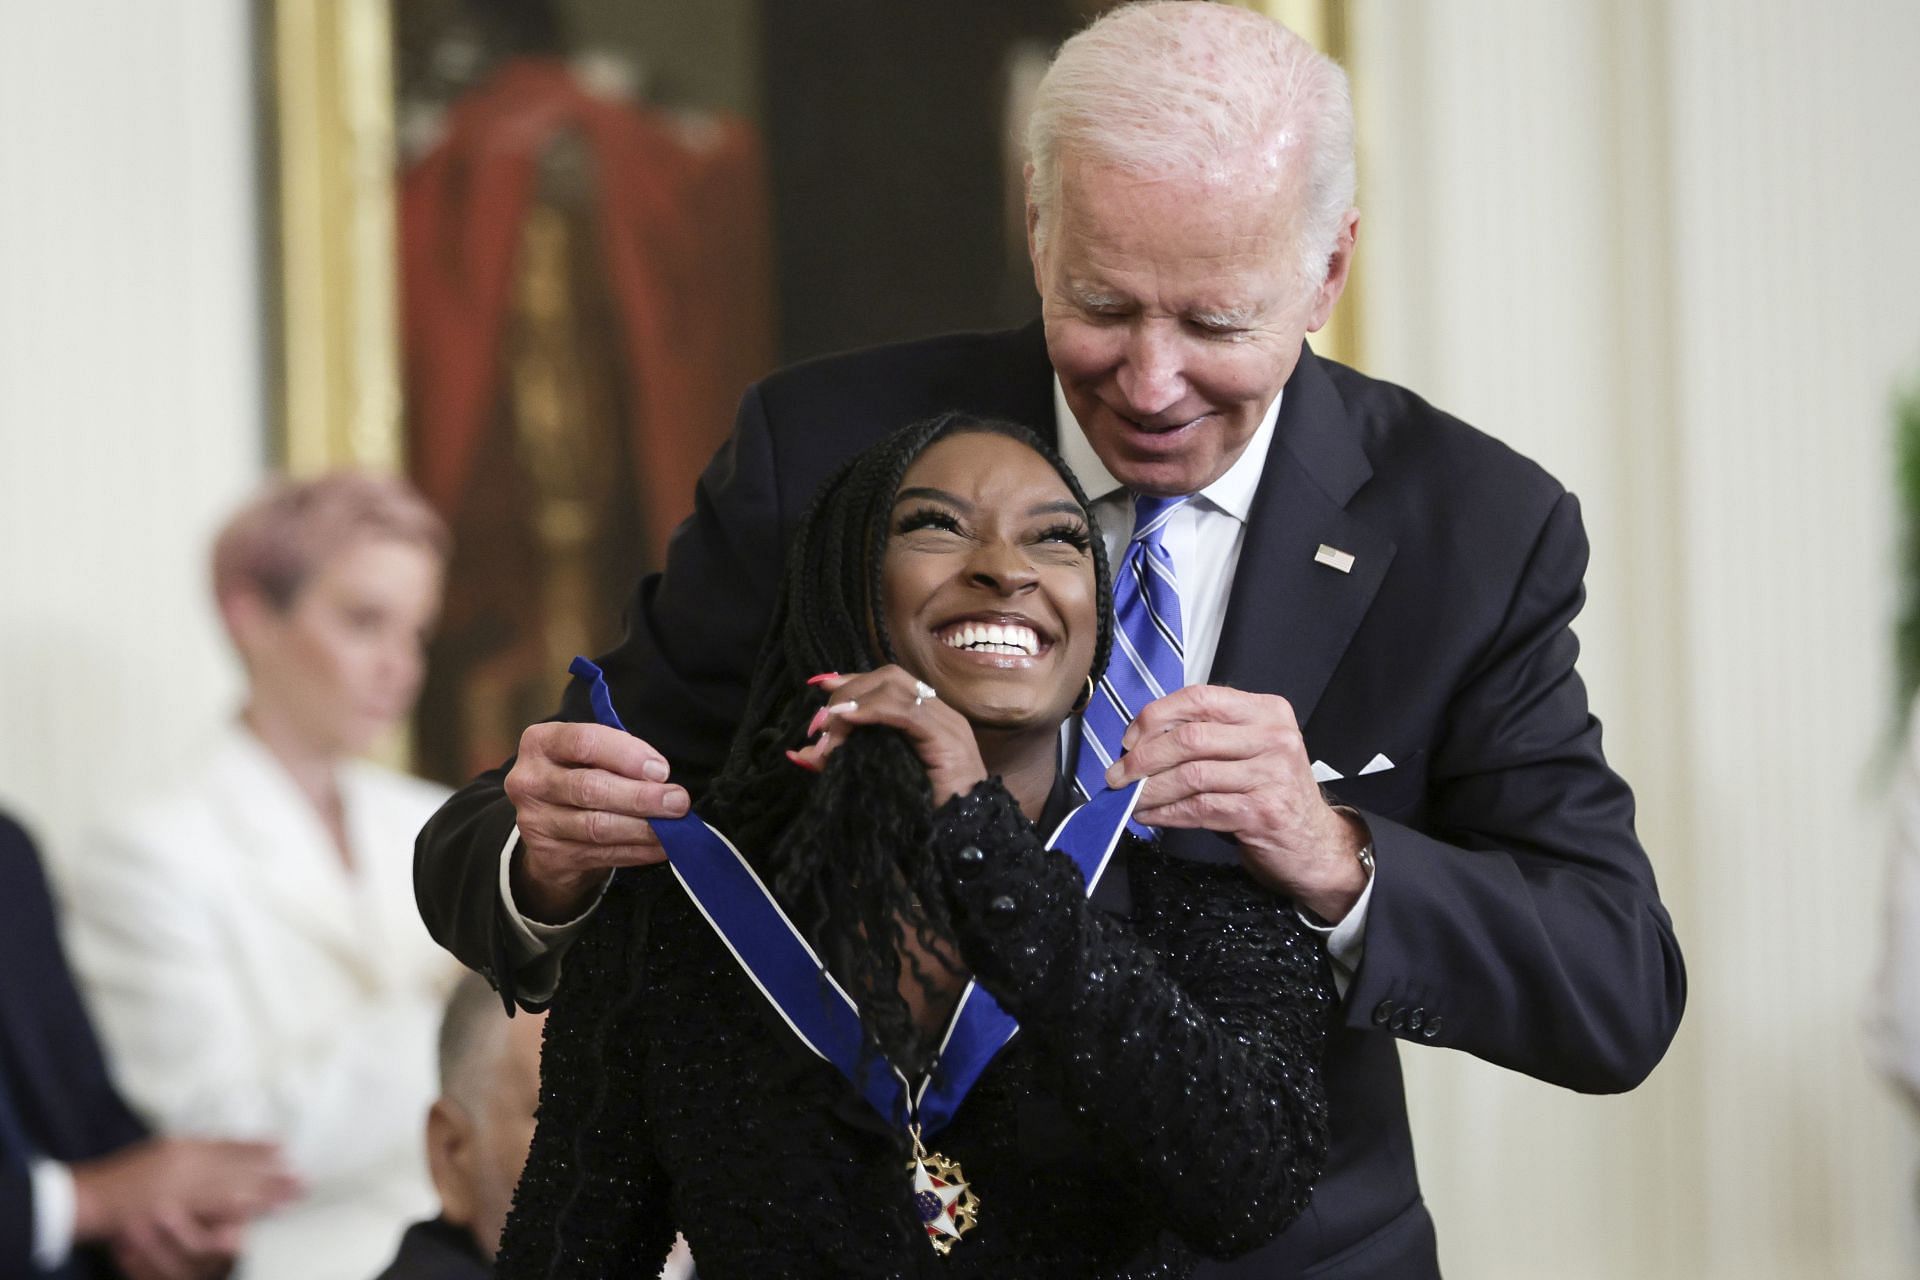 President Biden awards the Presidential Medal of Freedom to Simone Biles